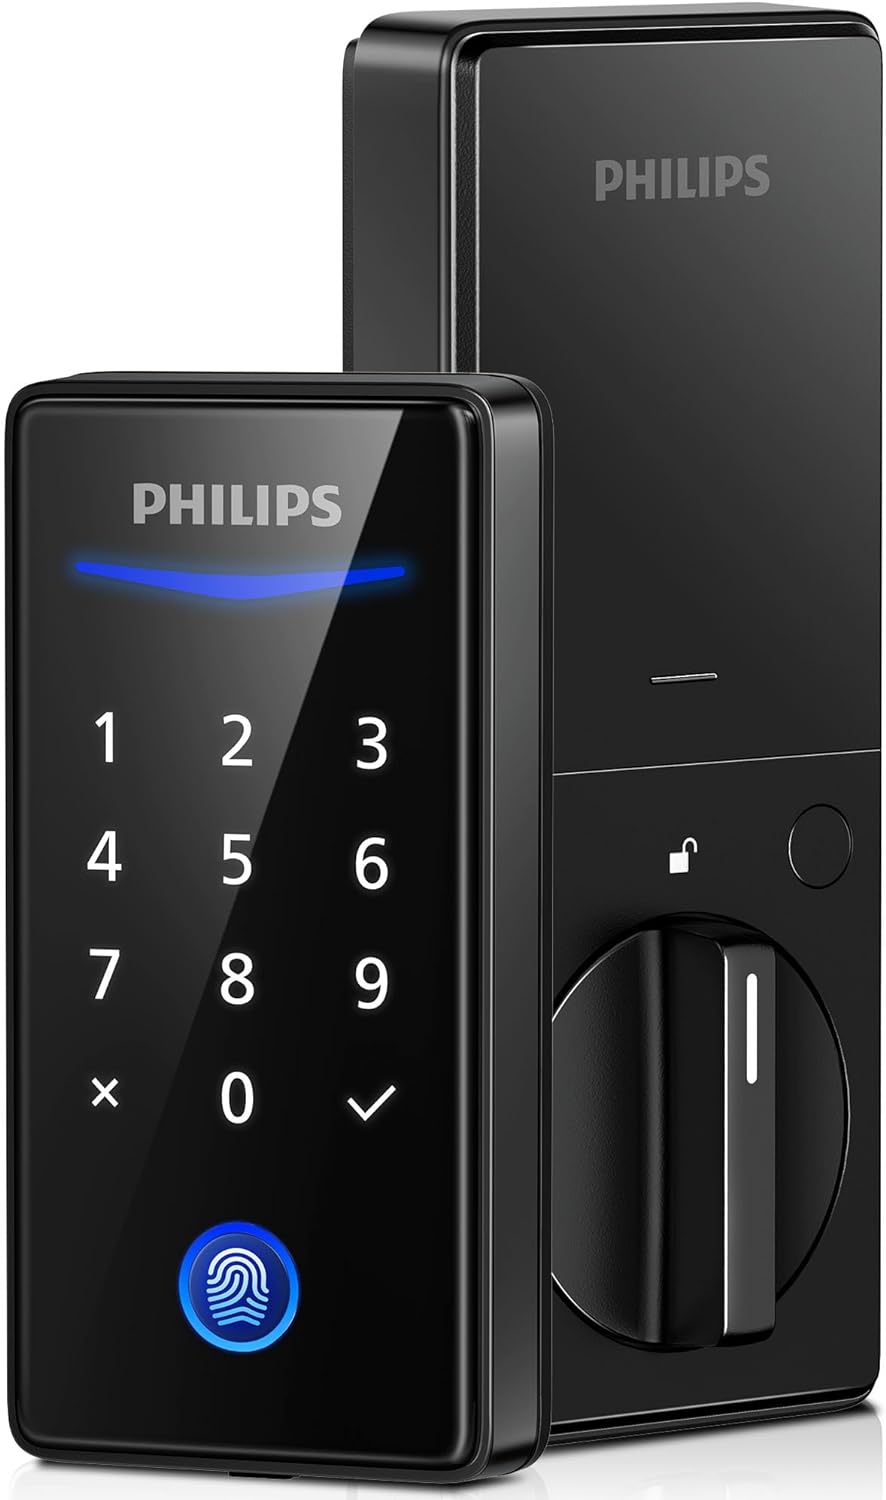 Philips Keyless Entry Door Lock with Keypad - Smart Deadbolt Lock for Front Door, Auto Lock, One-time PIN Code, Fingerprint Door Lock - Matte Black